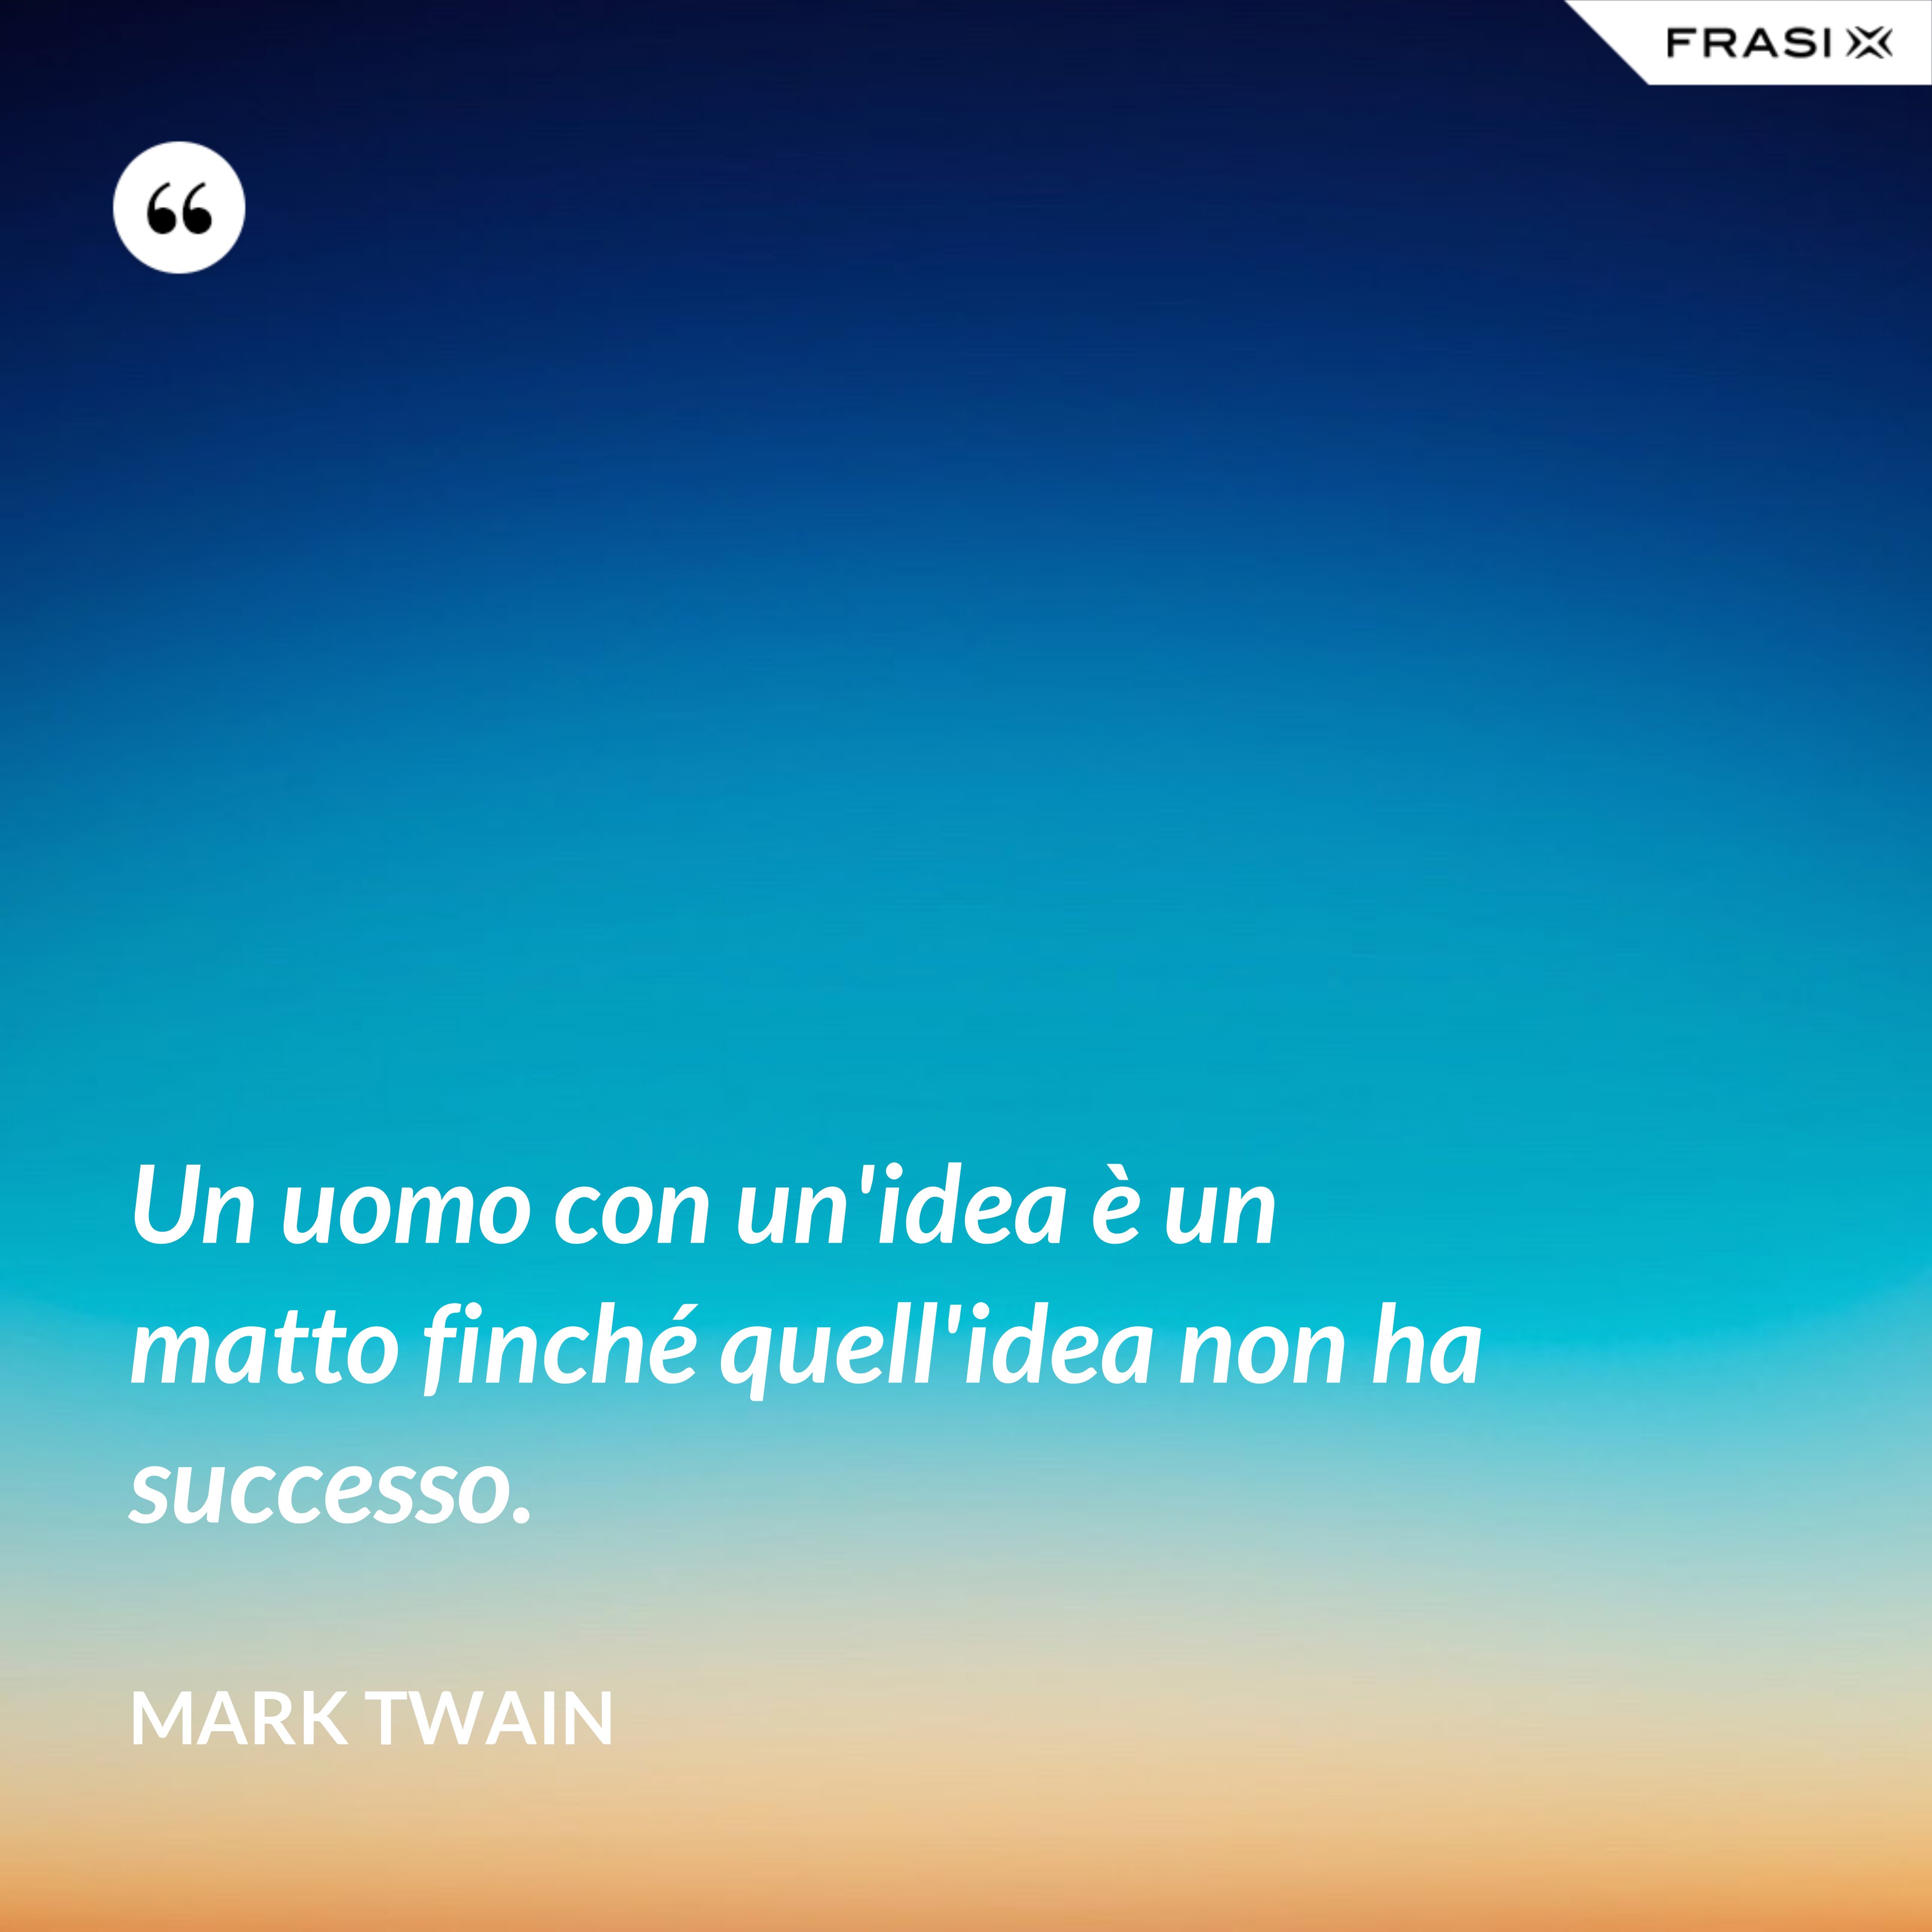 Un uomo con un'idea è un matto finché quell'idea non ha successo. - Mark Twain